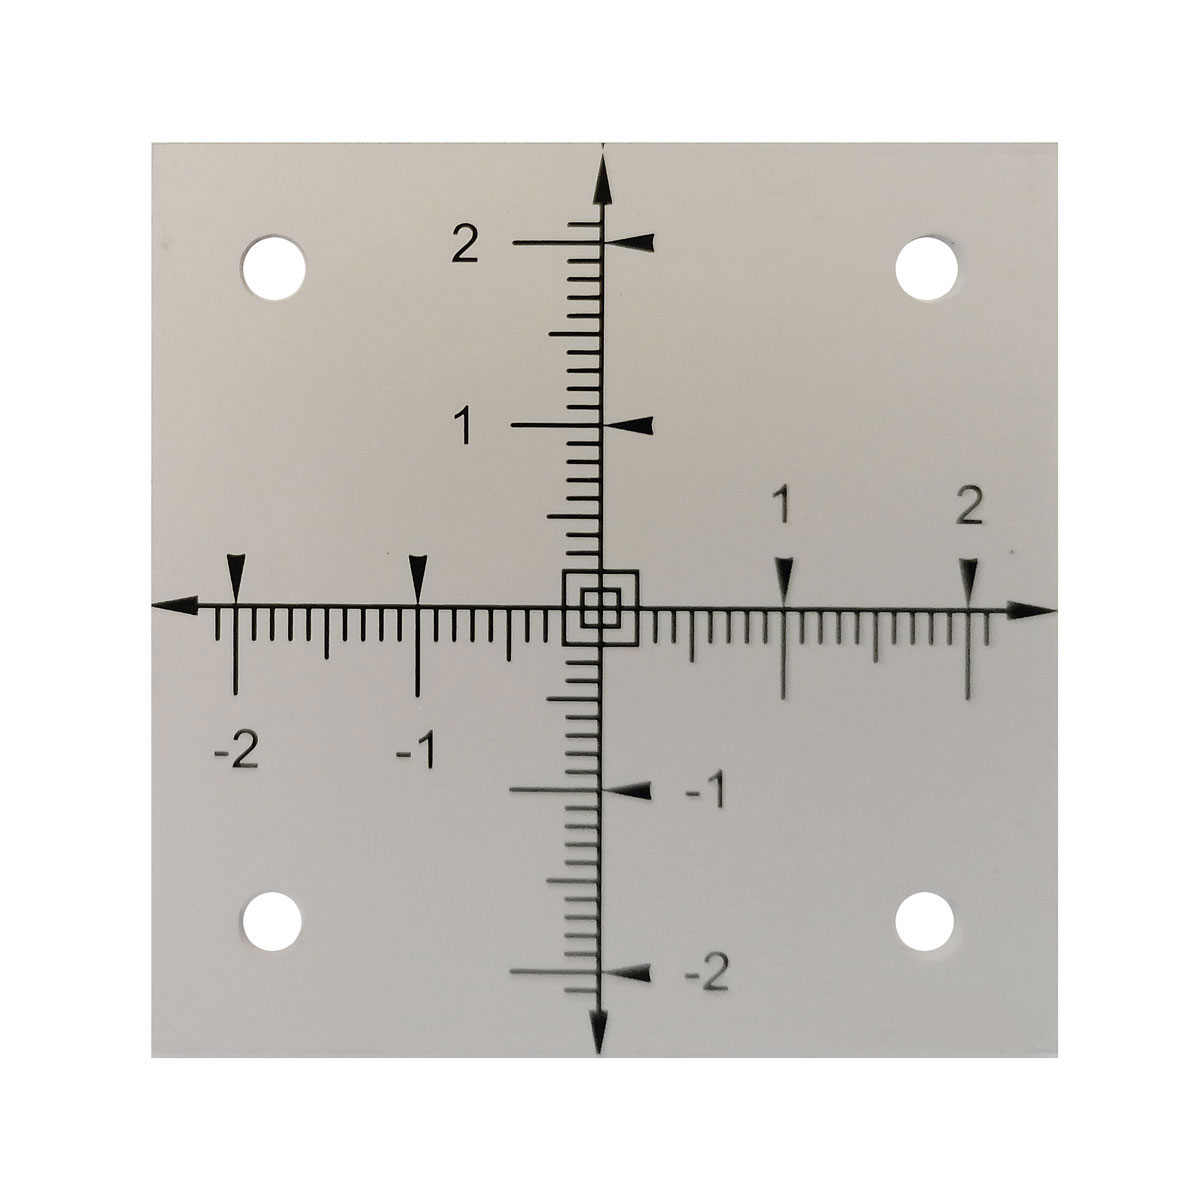 Zielmarke aus Aluminium eloxiert Achsmarke mit Fadenkreuz 50x50 mm, Stärke 2 mm